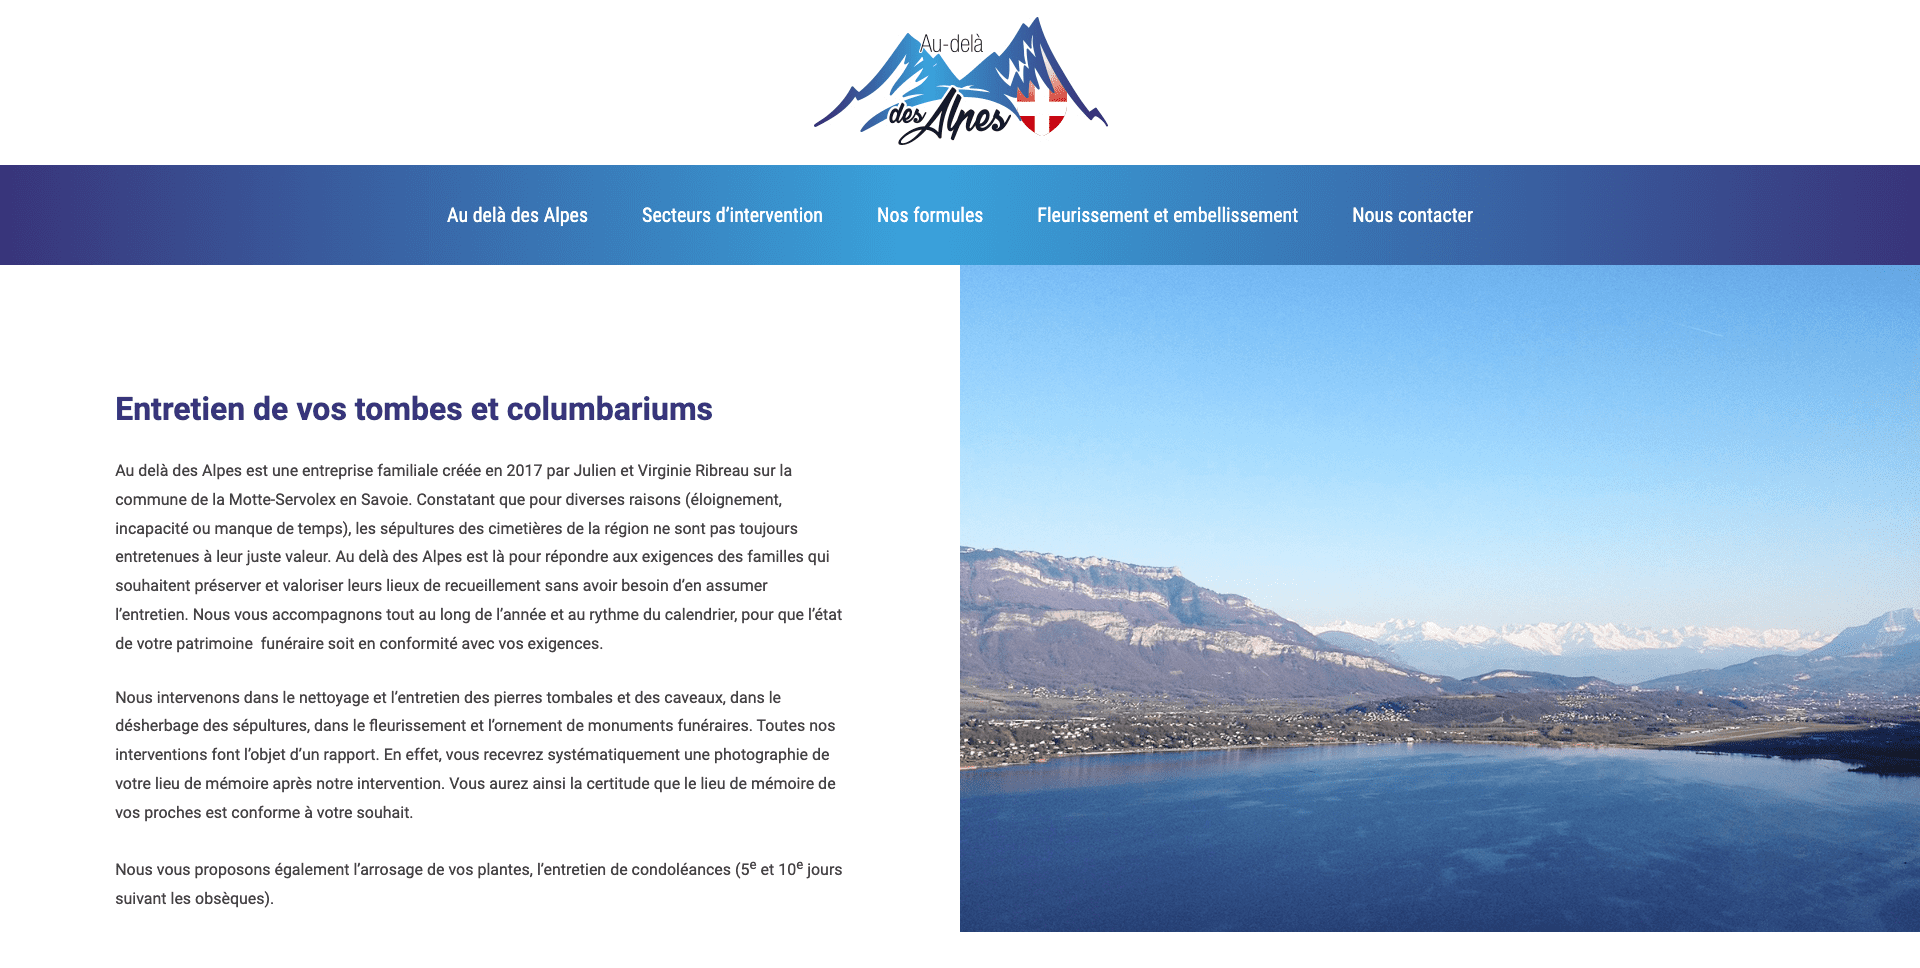 Site web Au-delà des Alpes entretien de vos tombes et columbariums à Chambéry